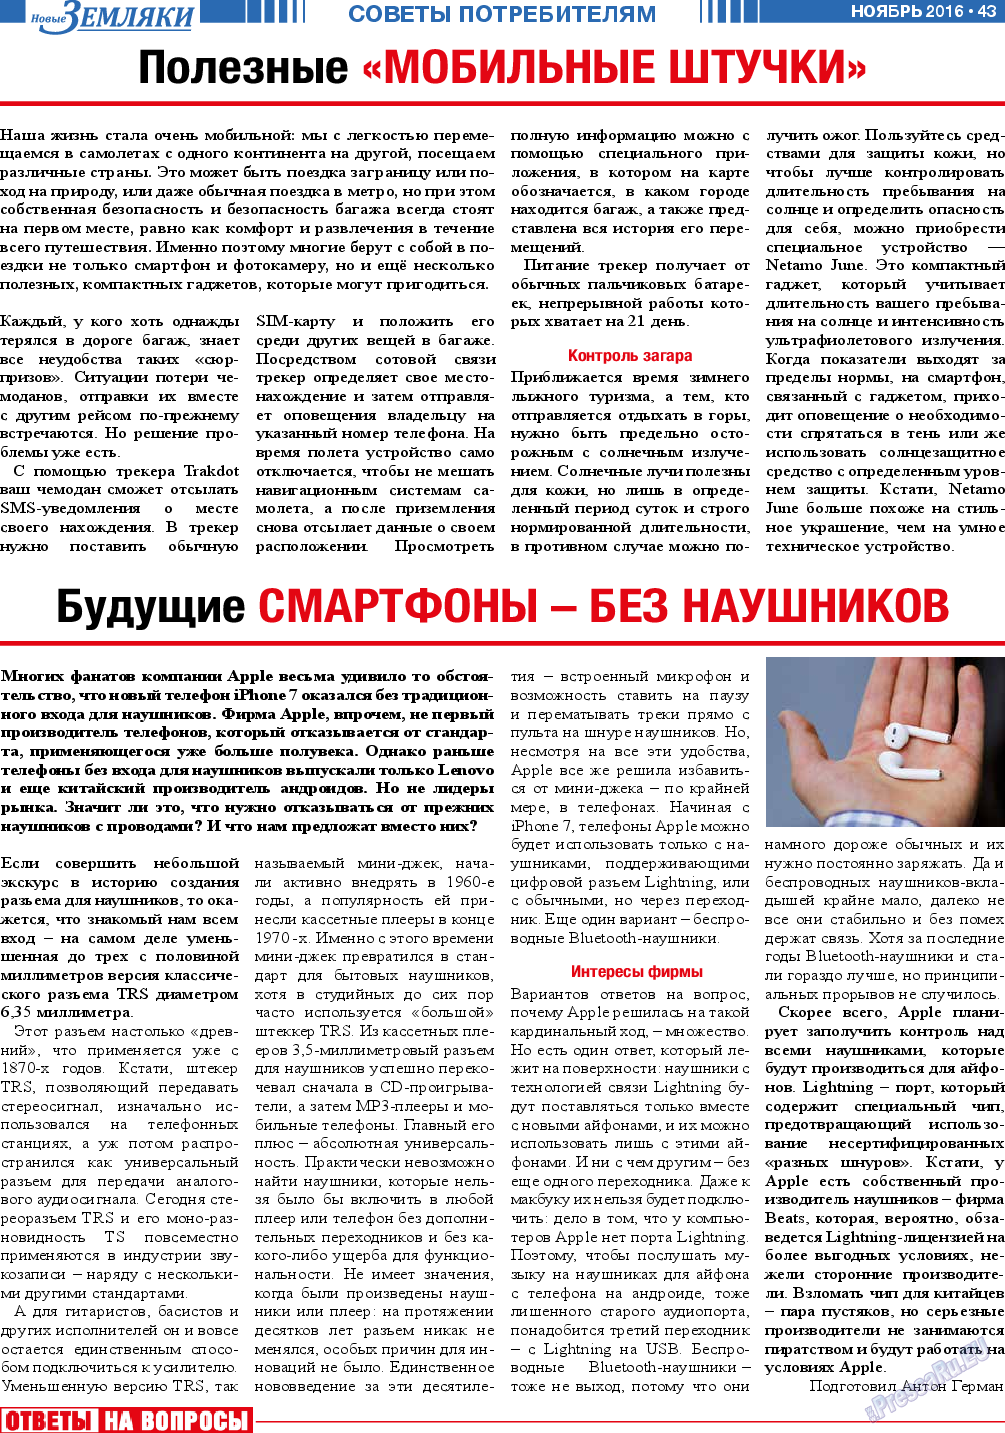 Новые Земляки, газета. 2016 №11 стр.43